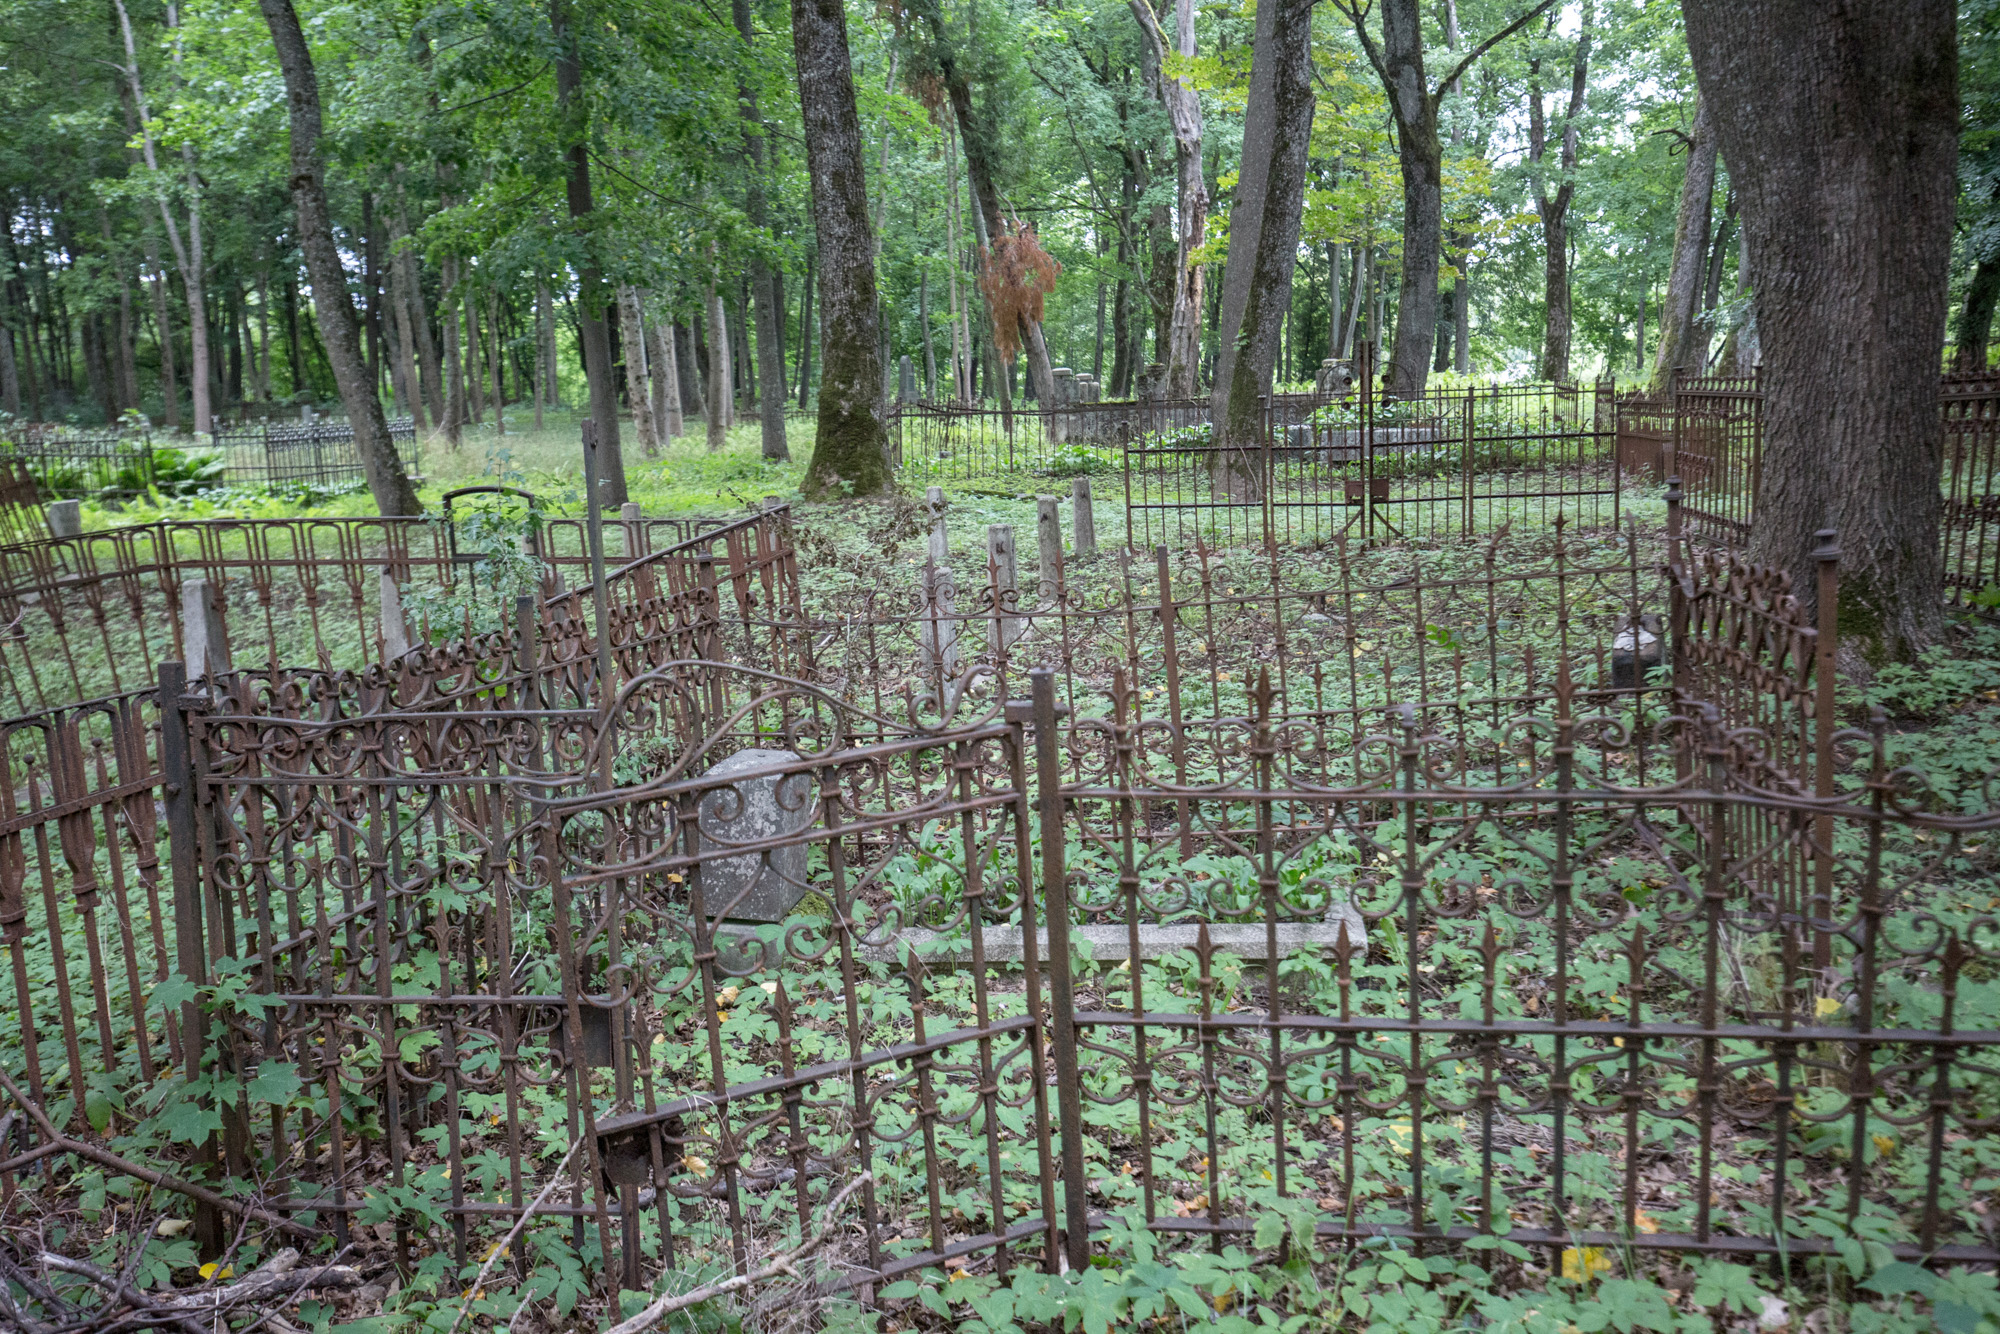  Mažajai Lietuvai būdingi lieto metalo kryžiai ir tvorelės | Autorės nuotr.